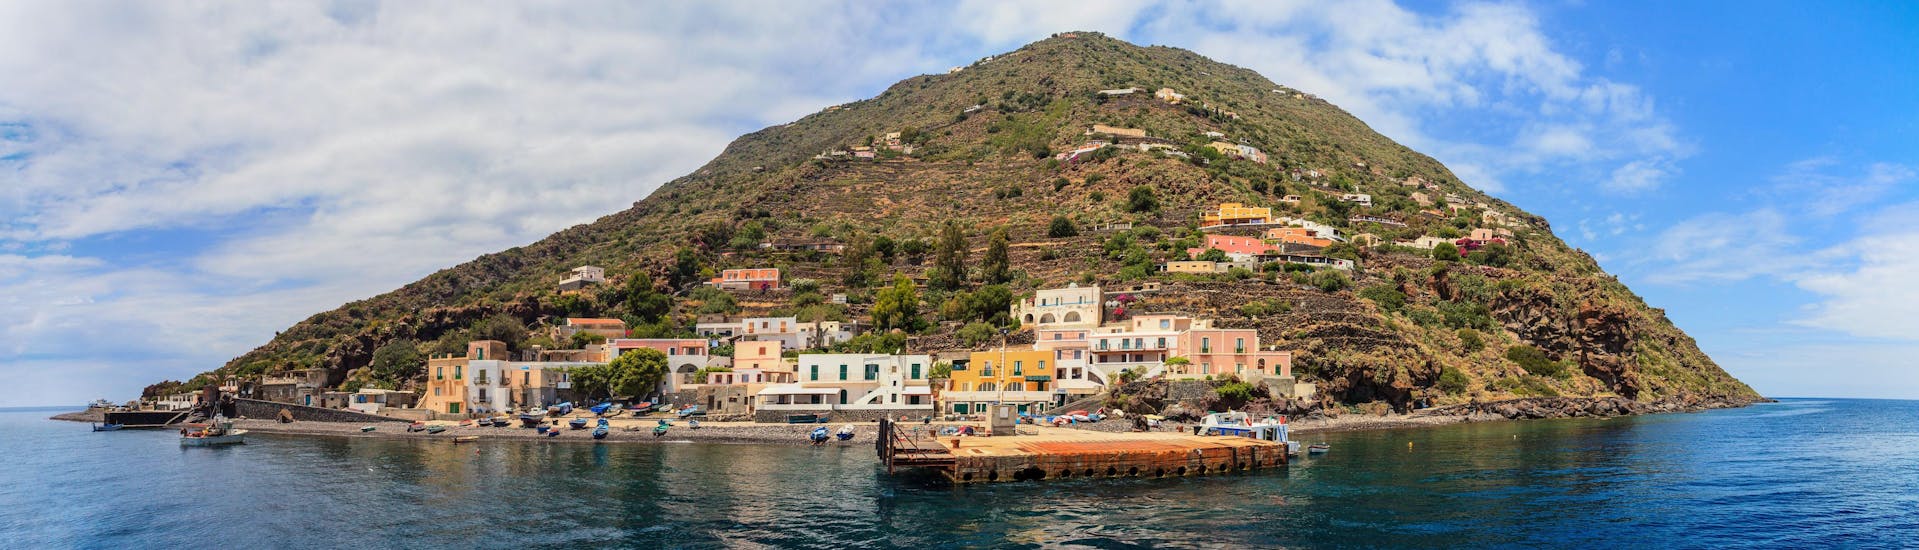 Vista de la isla de Alicudi, que se puede visitar con un paseo en barco a las Islas Eolias.